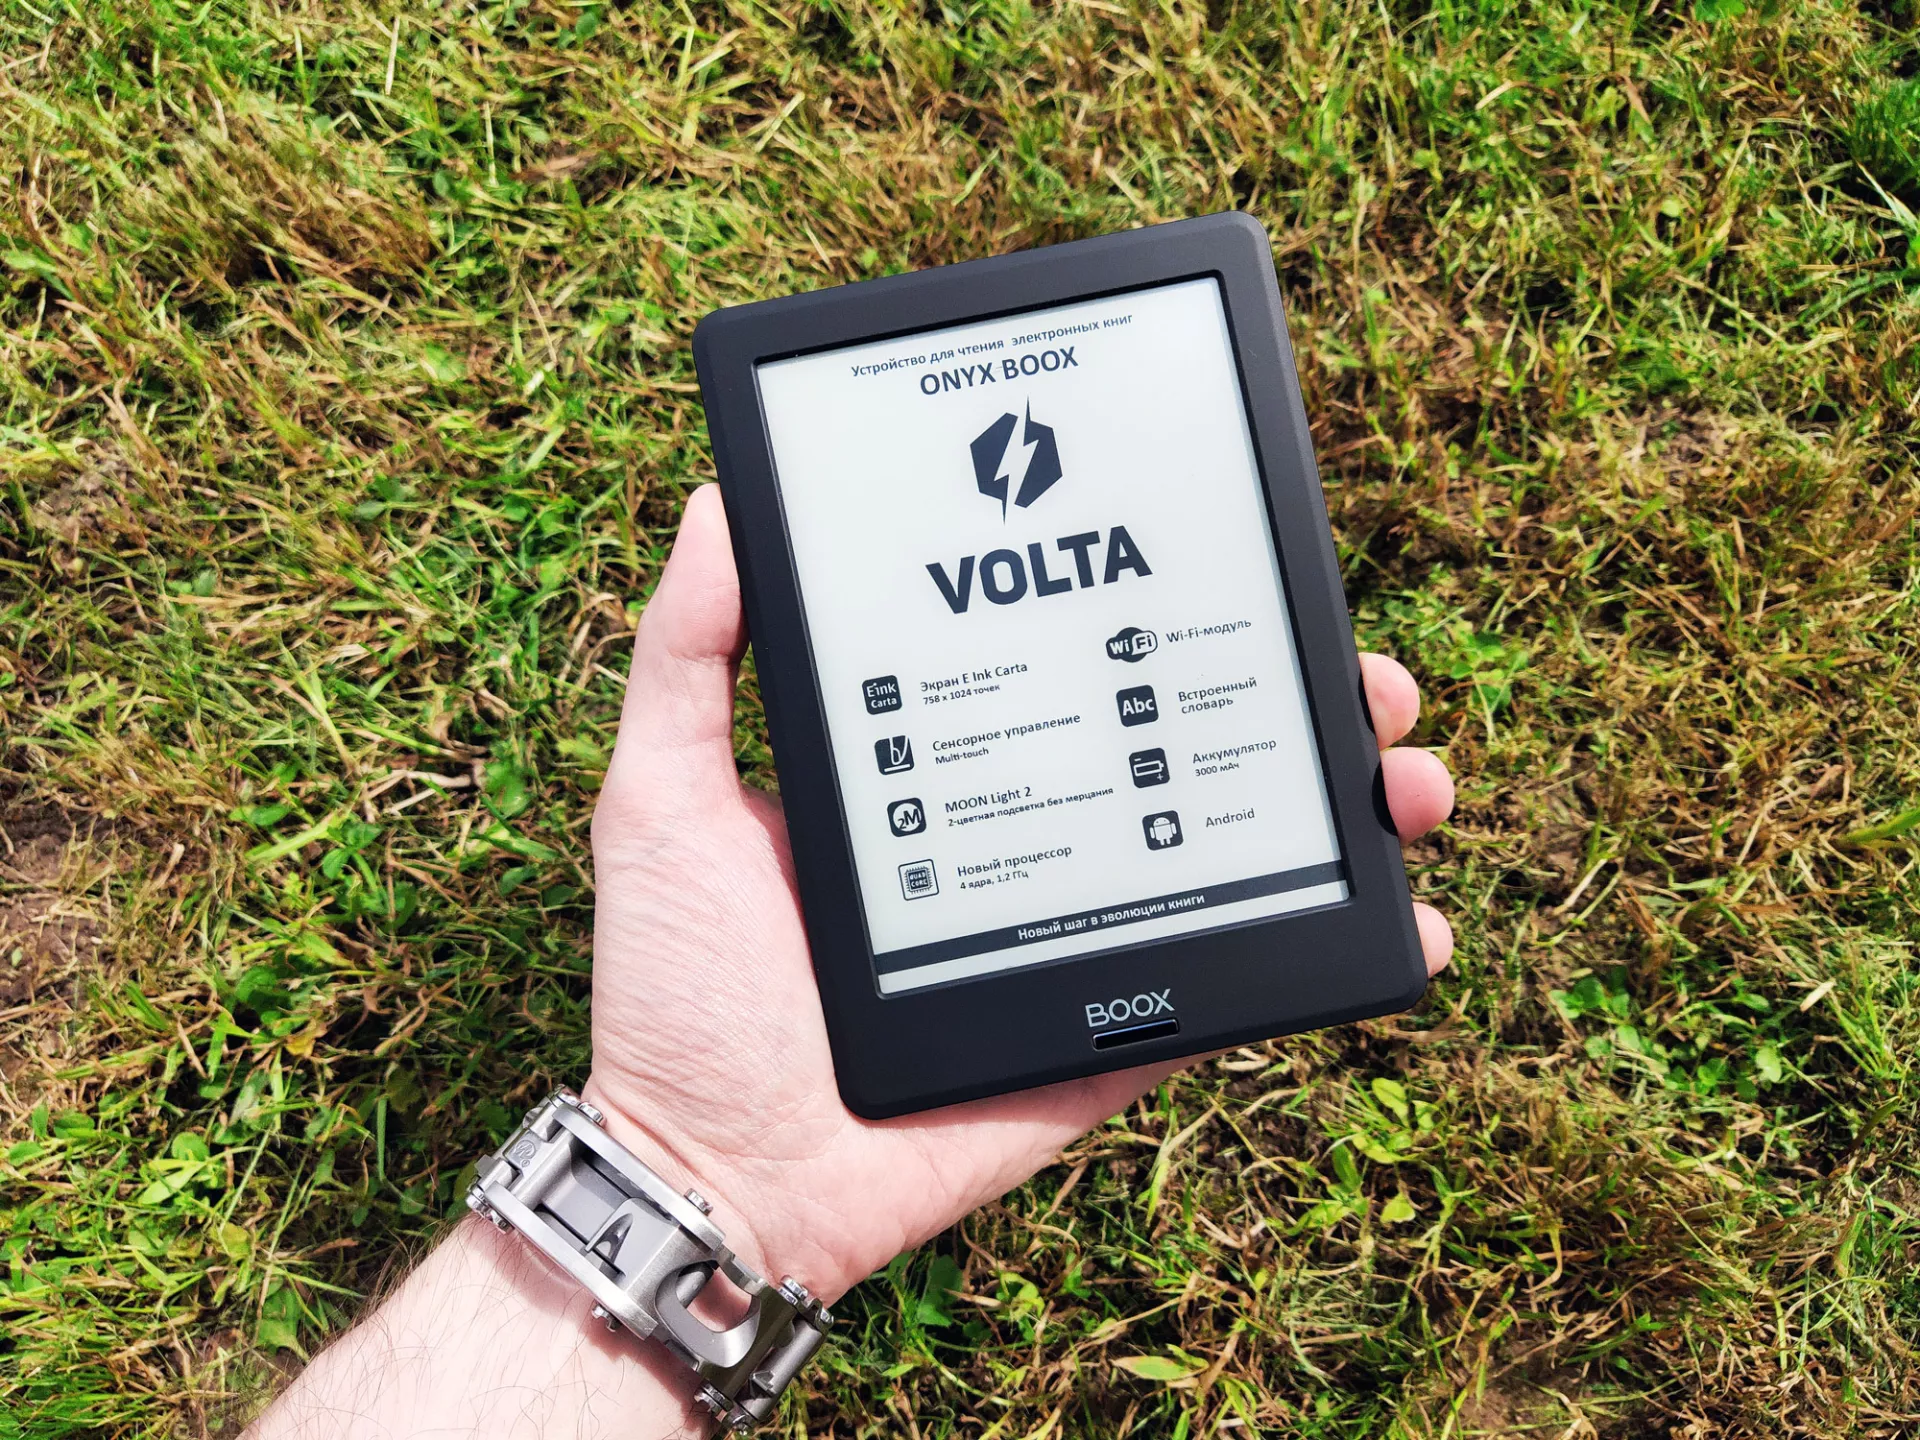 Тест-драйв электронной книги ONYX BOOX Volta